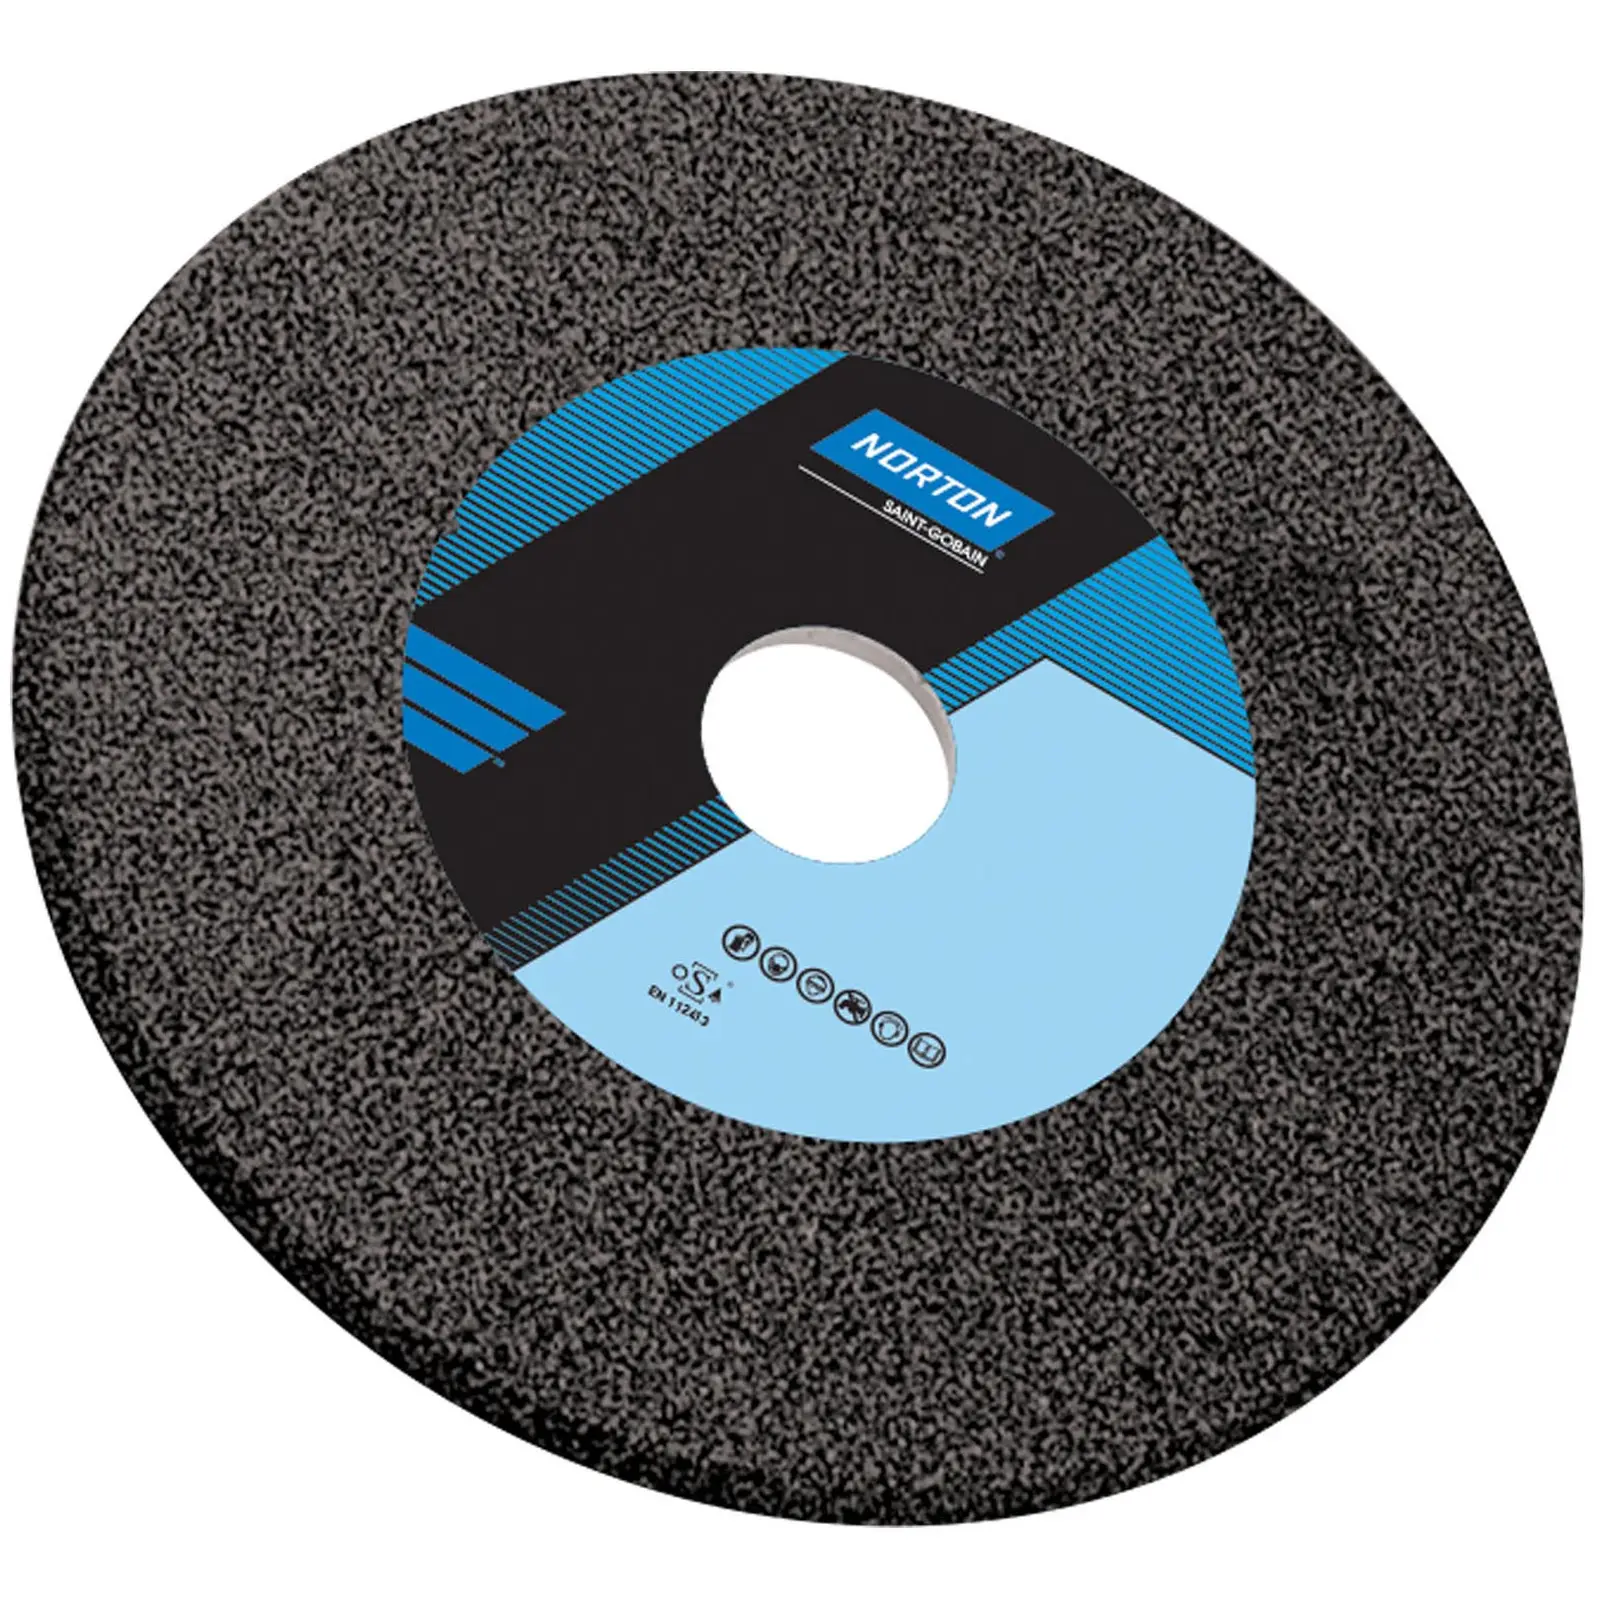 Disco para amoladora - Ø 200 mm - grano: 46 - grado de dureza: J - carburo de silicio (negro) - 5 unidades